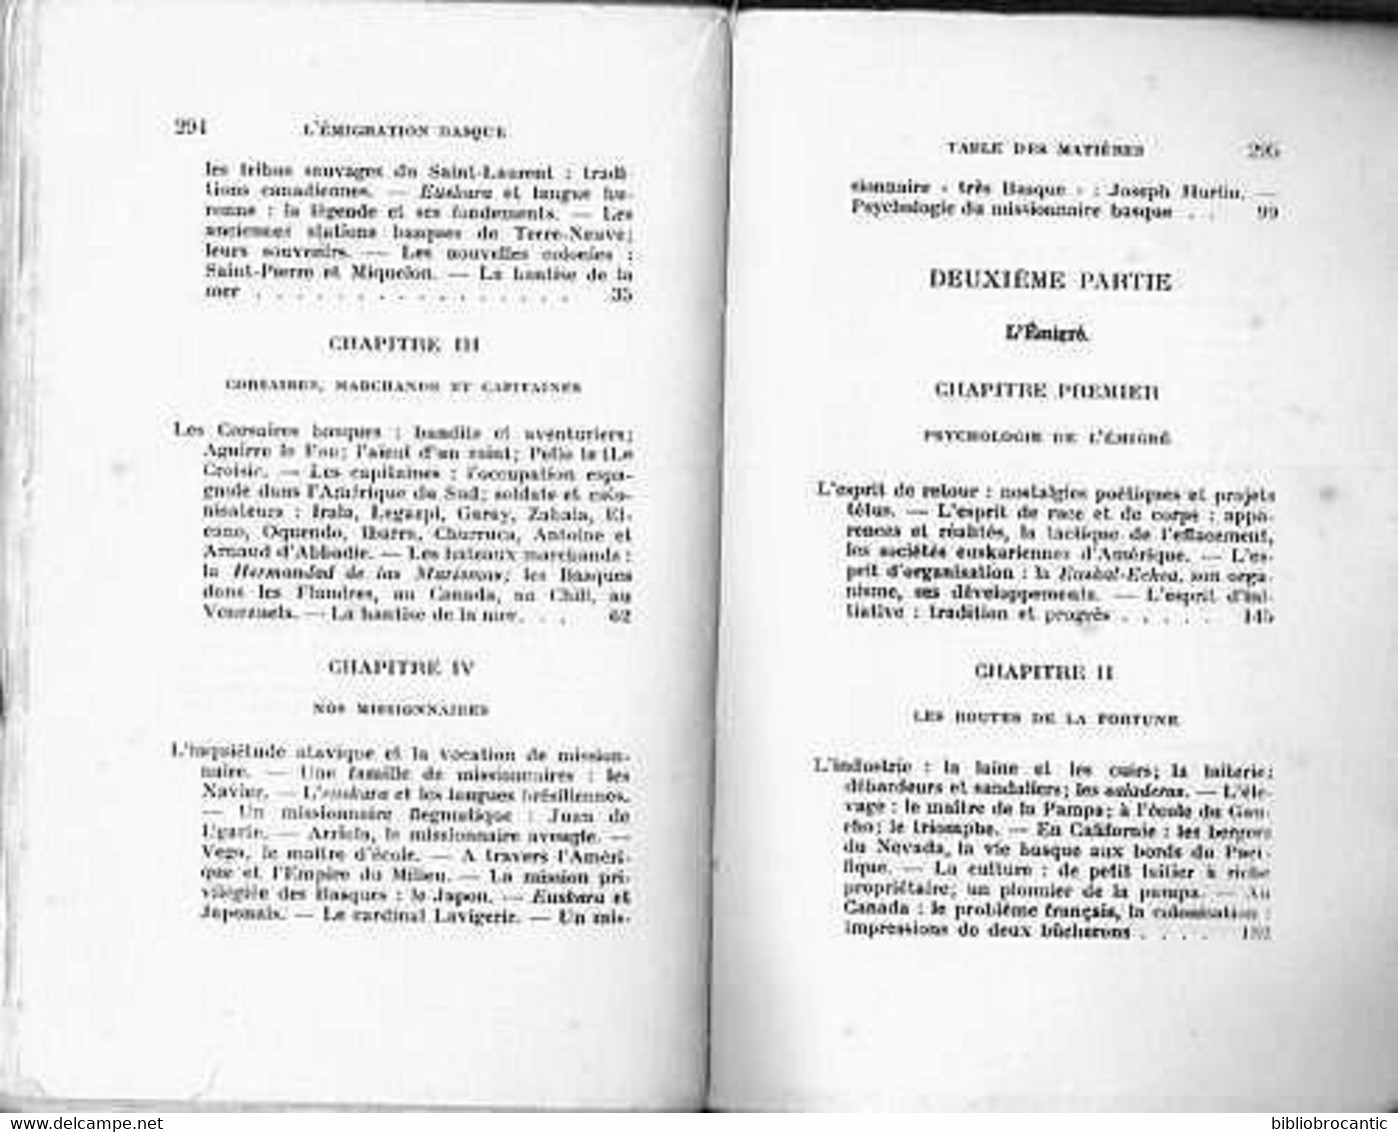 *L'EMIGRATION BASQUE*HISTOIRE-ECONOMIE-PSYCHOLOGIE Par Pierre LHANDE 1919 - Pays Basque